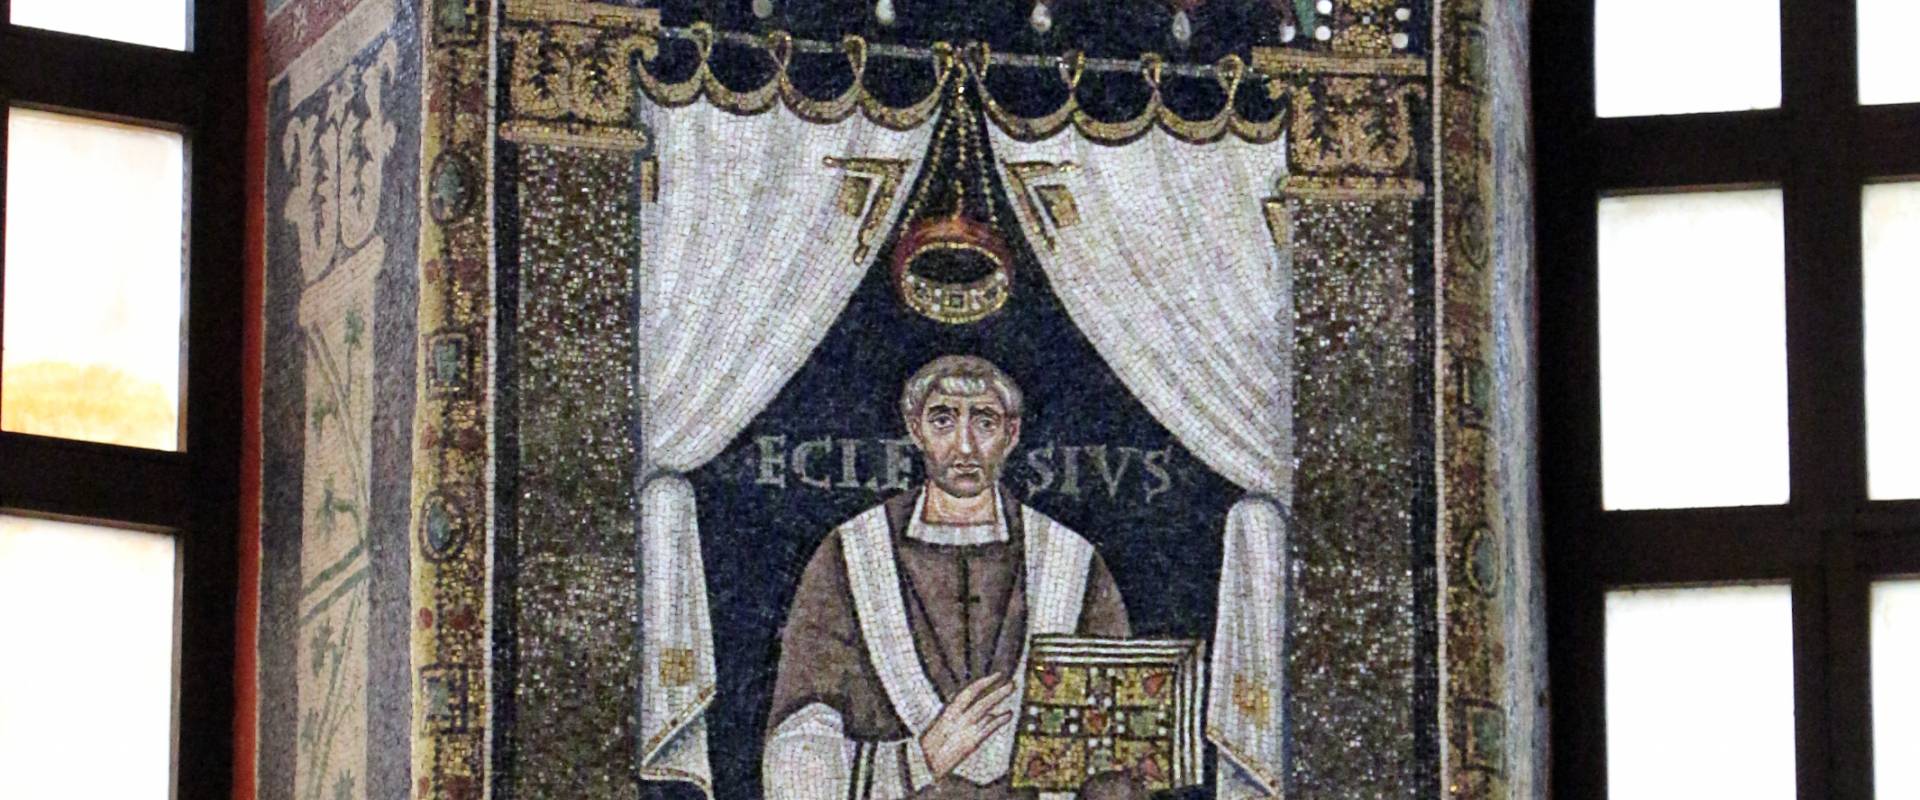 Sant'apollinare in classe, mosaici del catino, ecclesio, 550 ca. 01 photo by Sailko